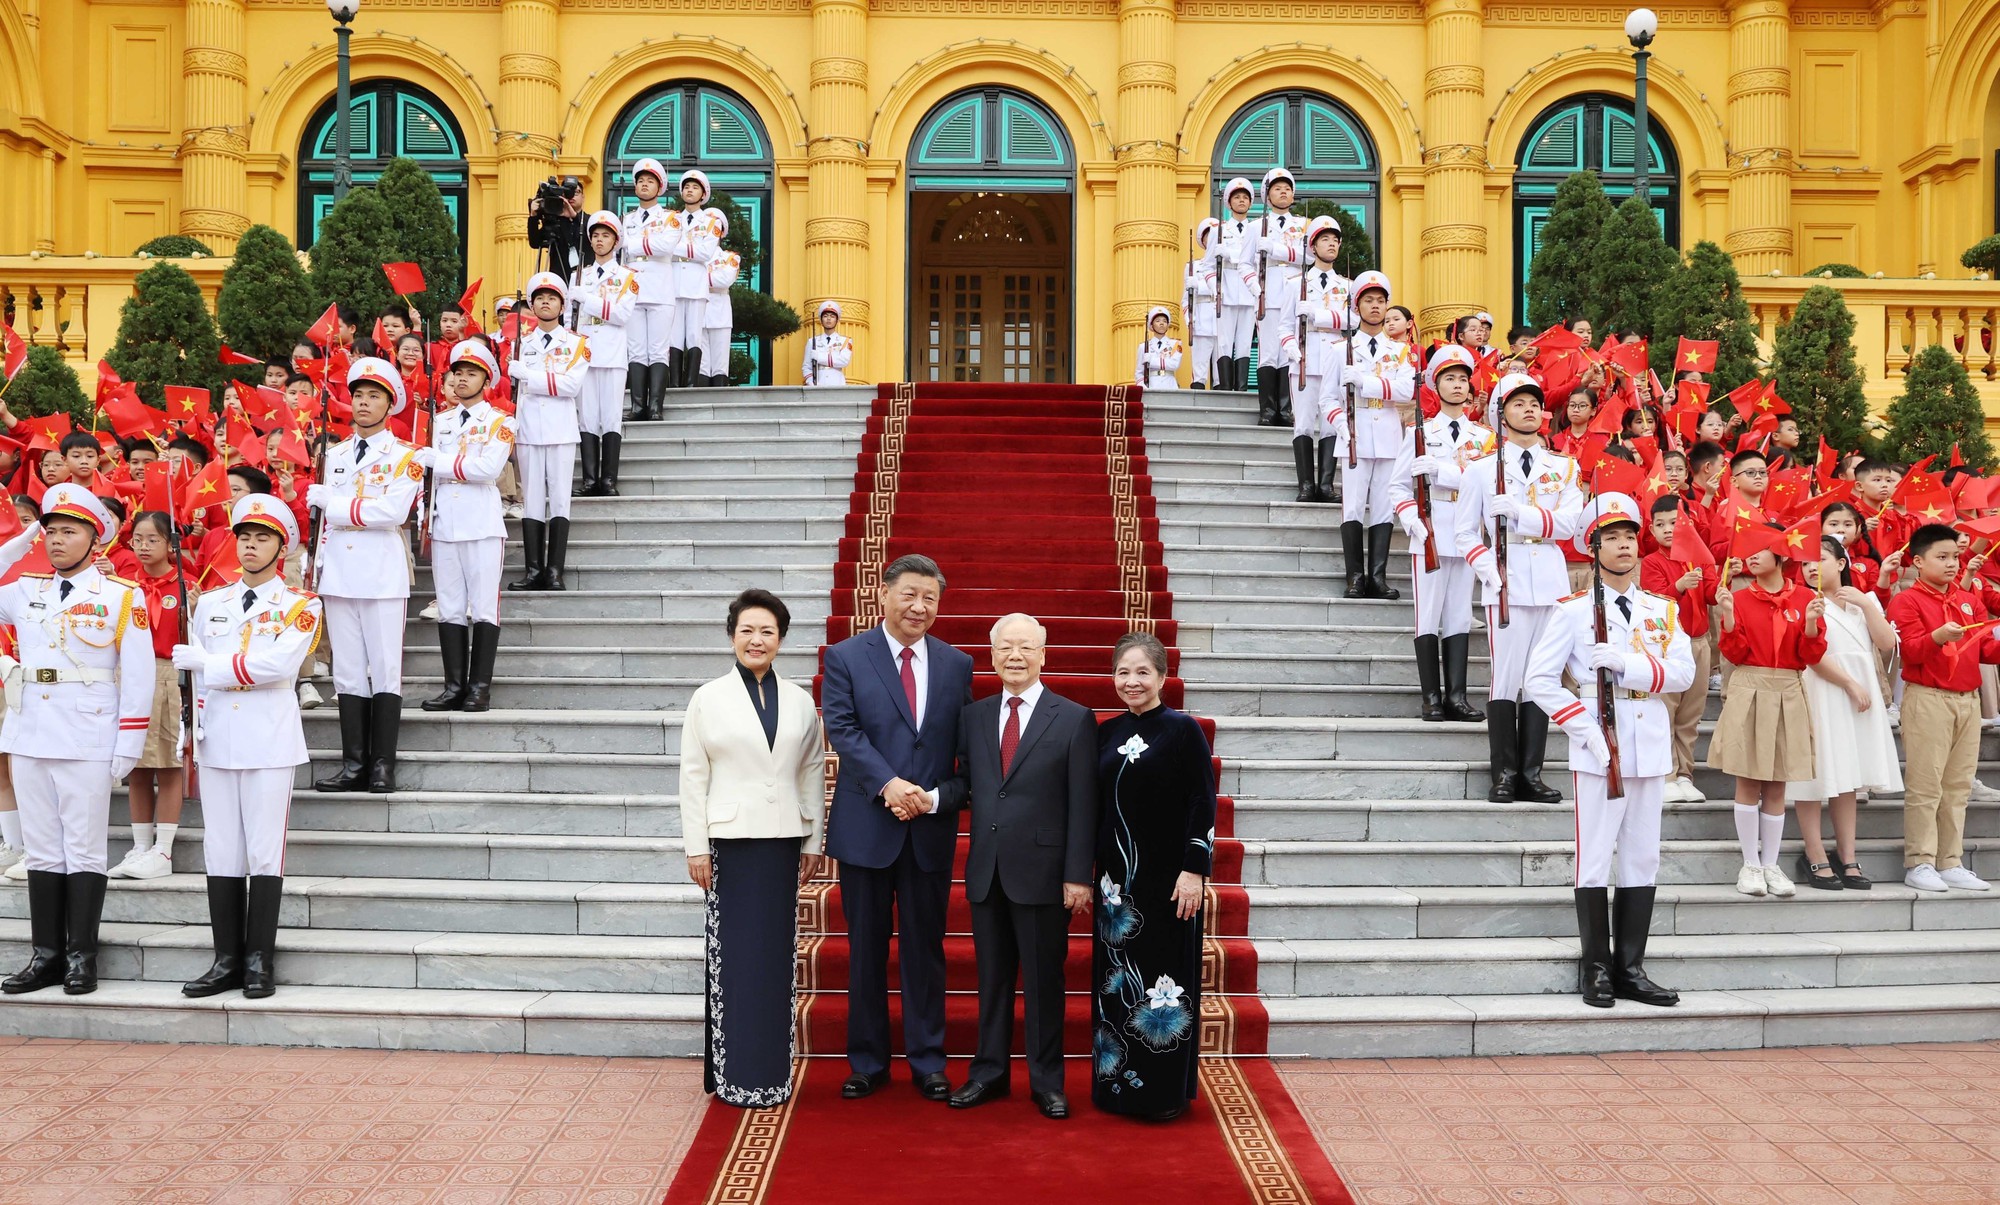 Toàn cảnh Lễ đón Tổng Bí thư, Chủ tịch nước Trung Quốc Tập Cận Bình thăm cấp Nhà nước tới Việt Nam - Ảnh 15.